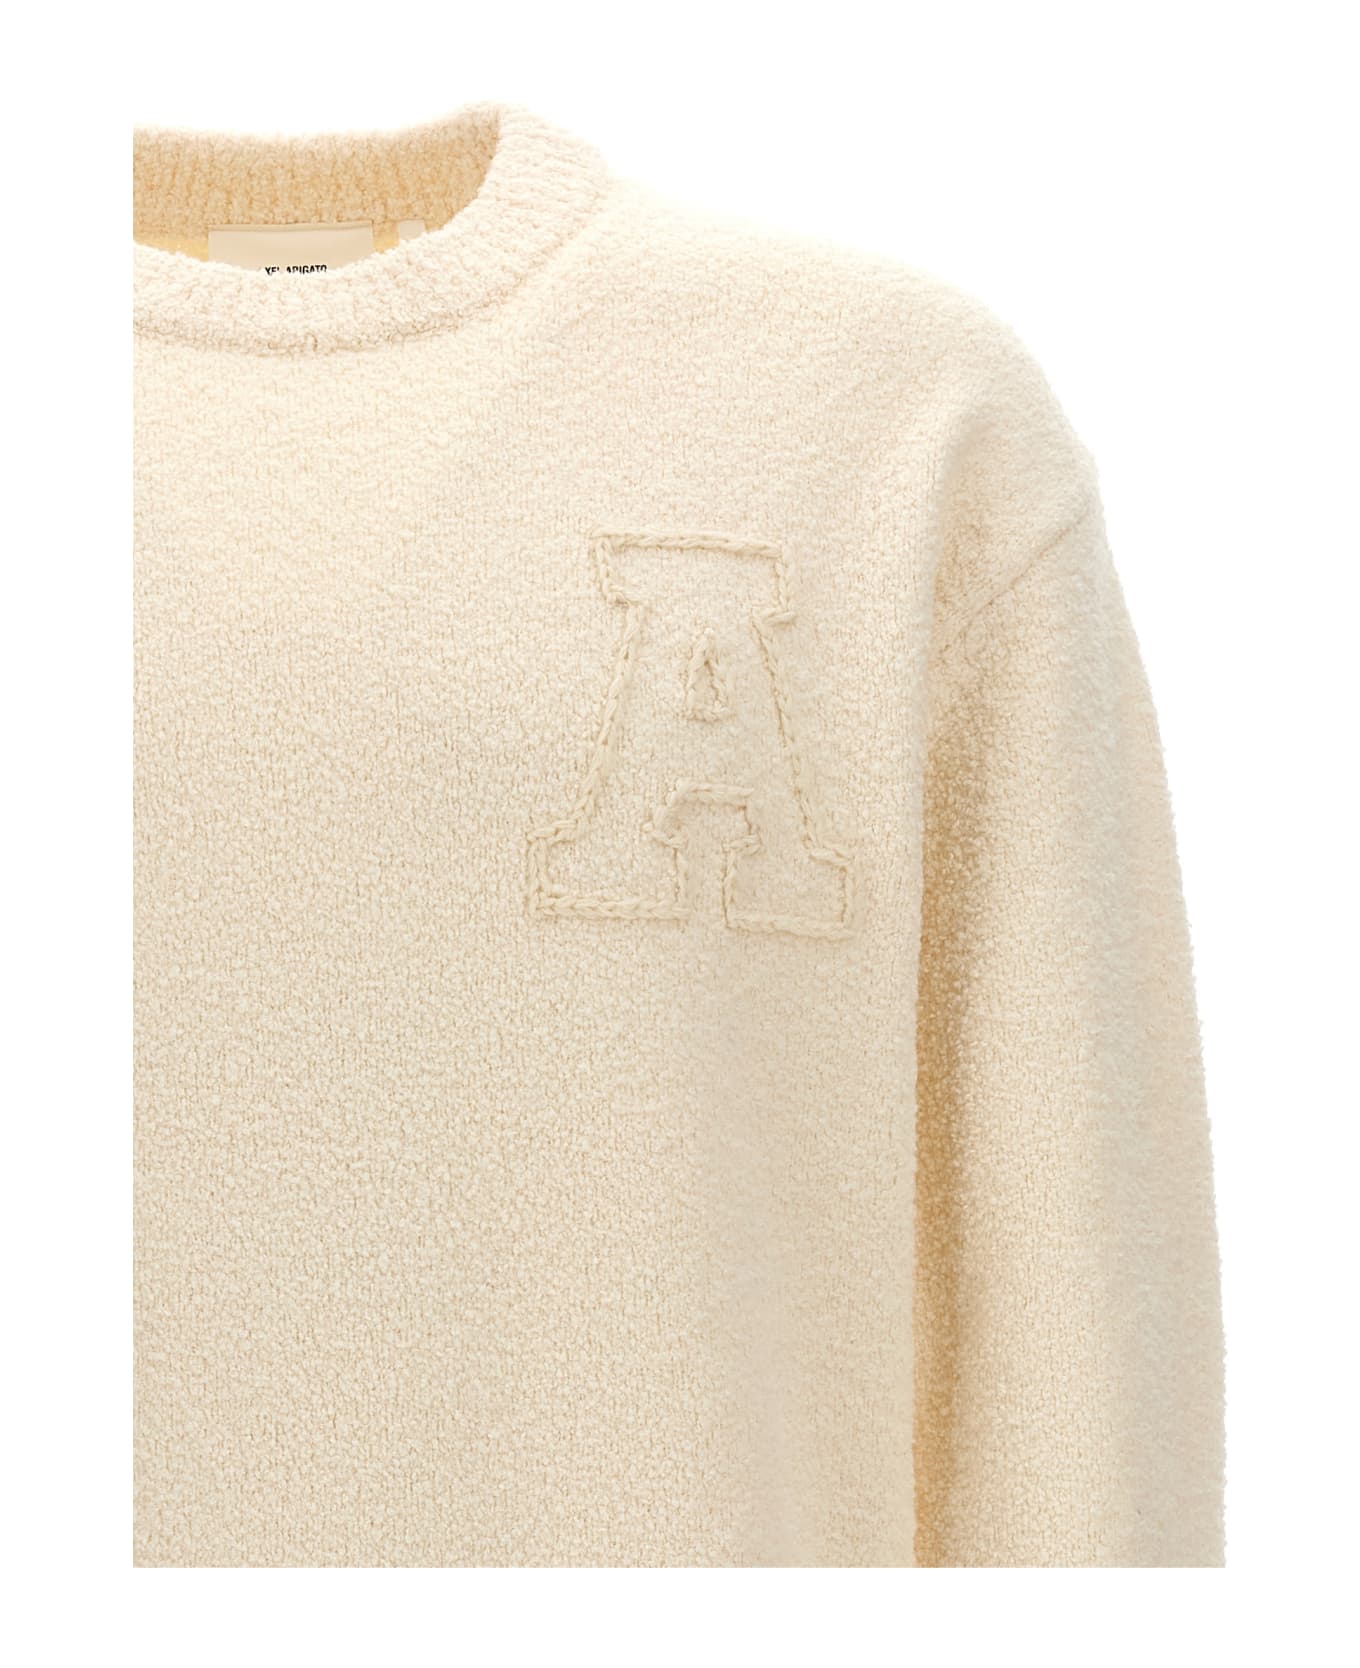 Axel Arigato 'radar' Sweater - White ニットウェア